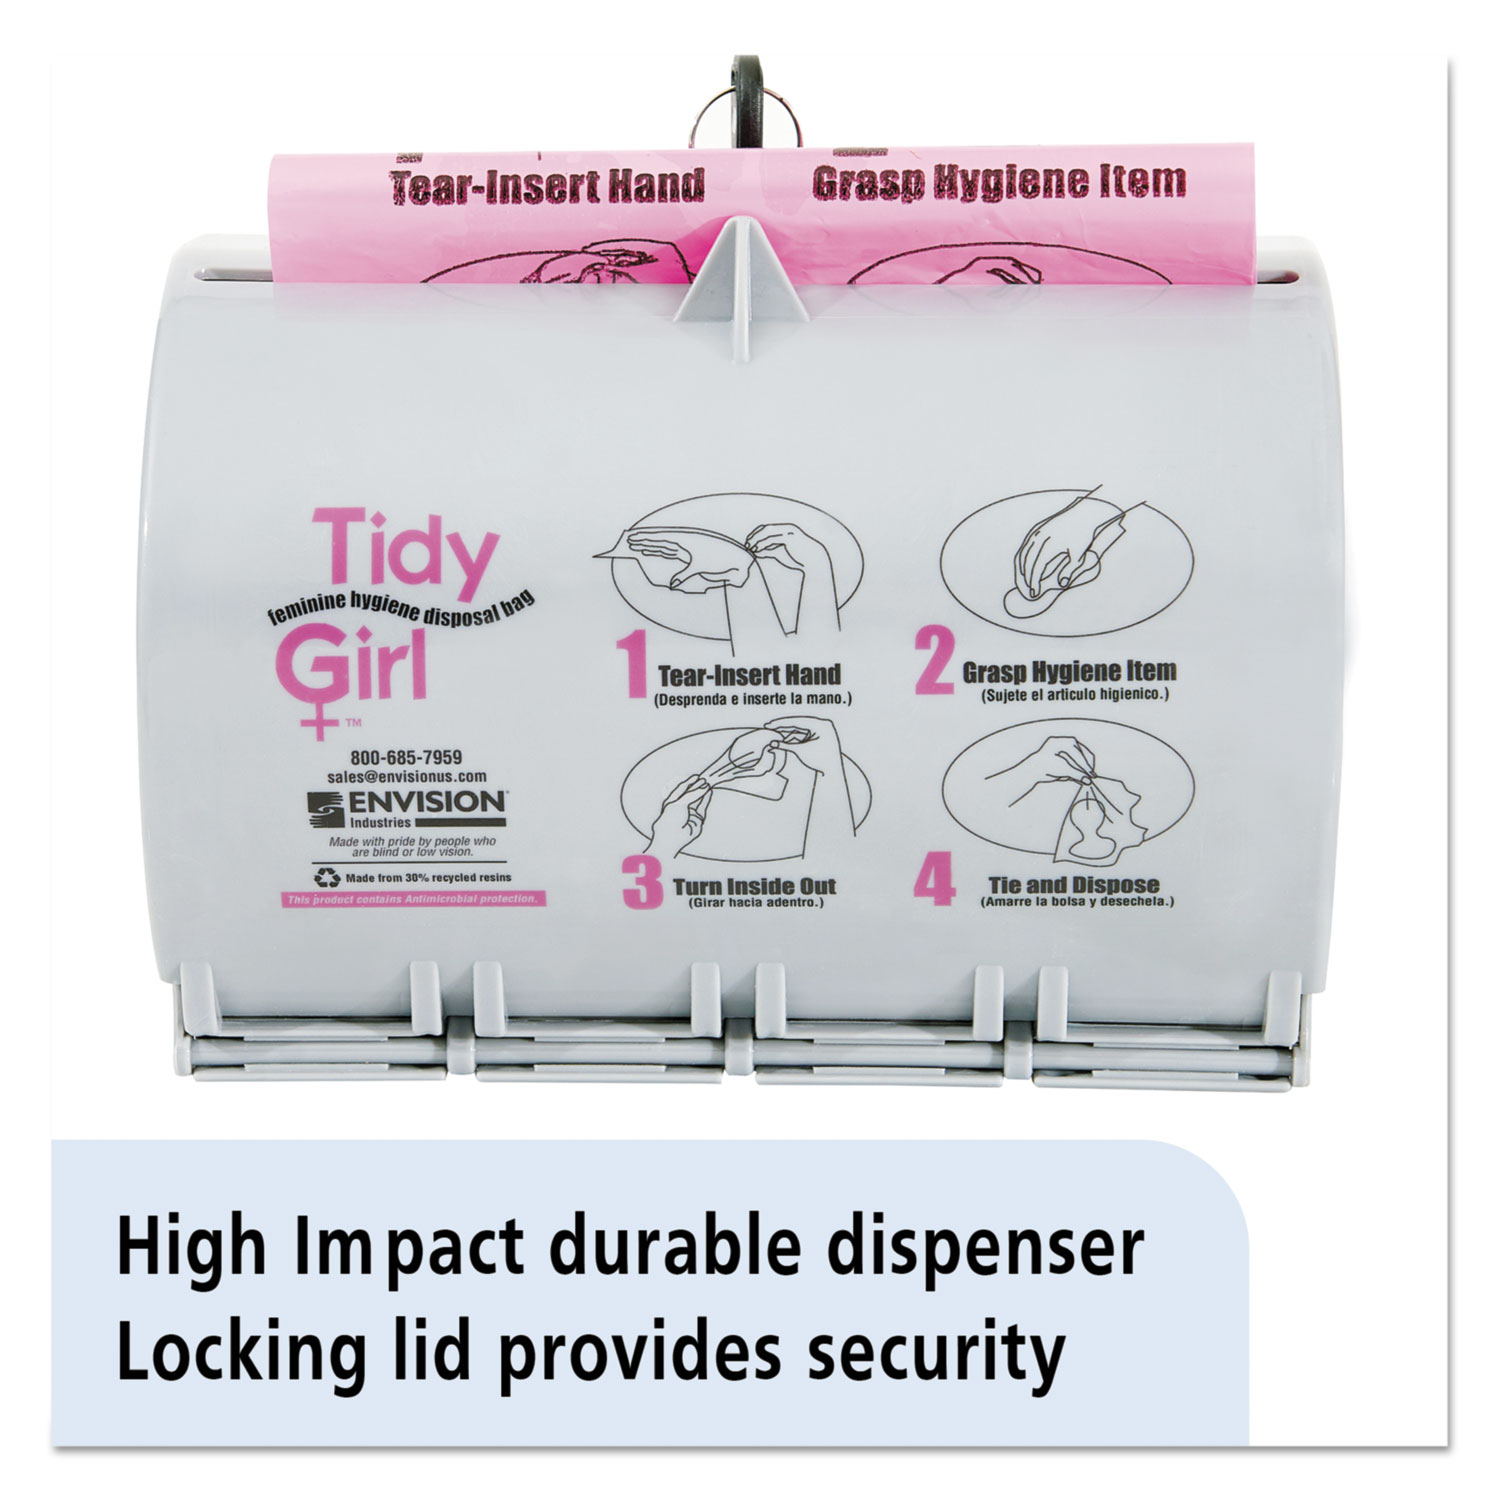 Tidy Girl Plastic Feminine Hygiene Disposal Bag Dispenser, Gray